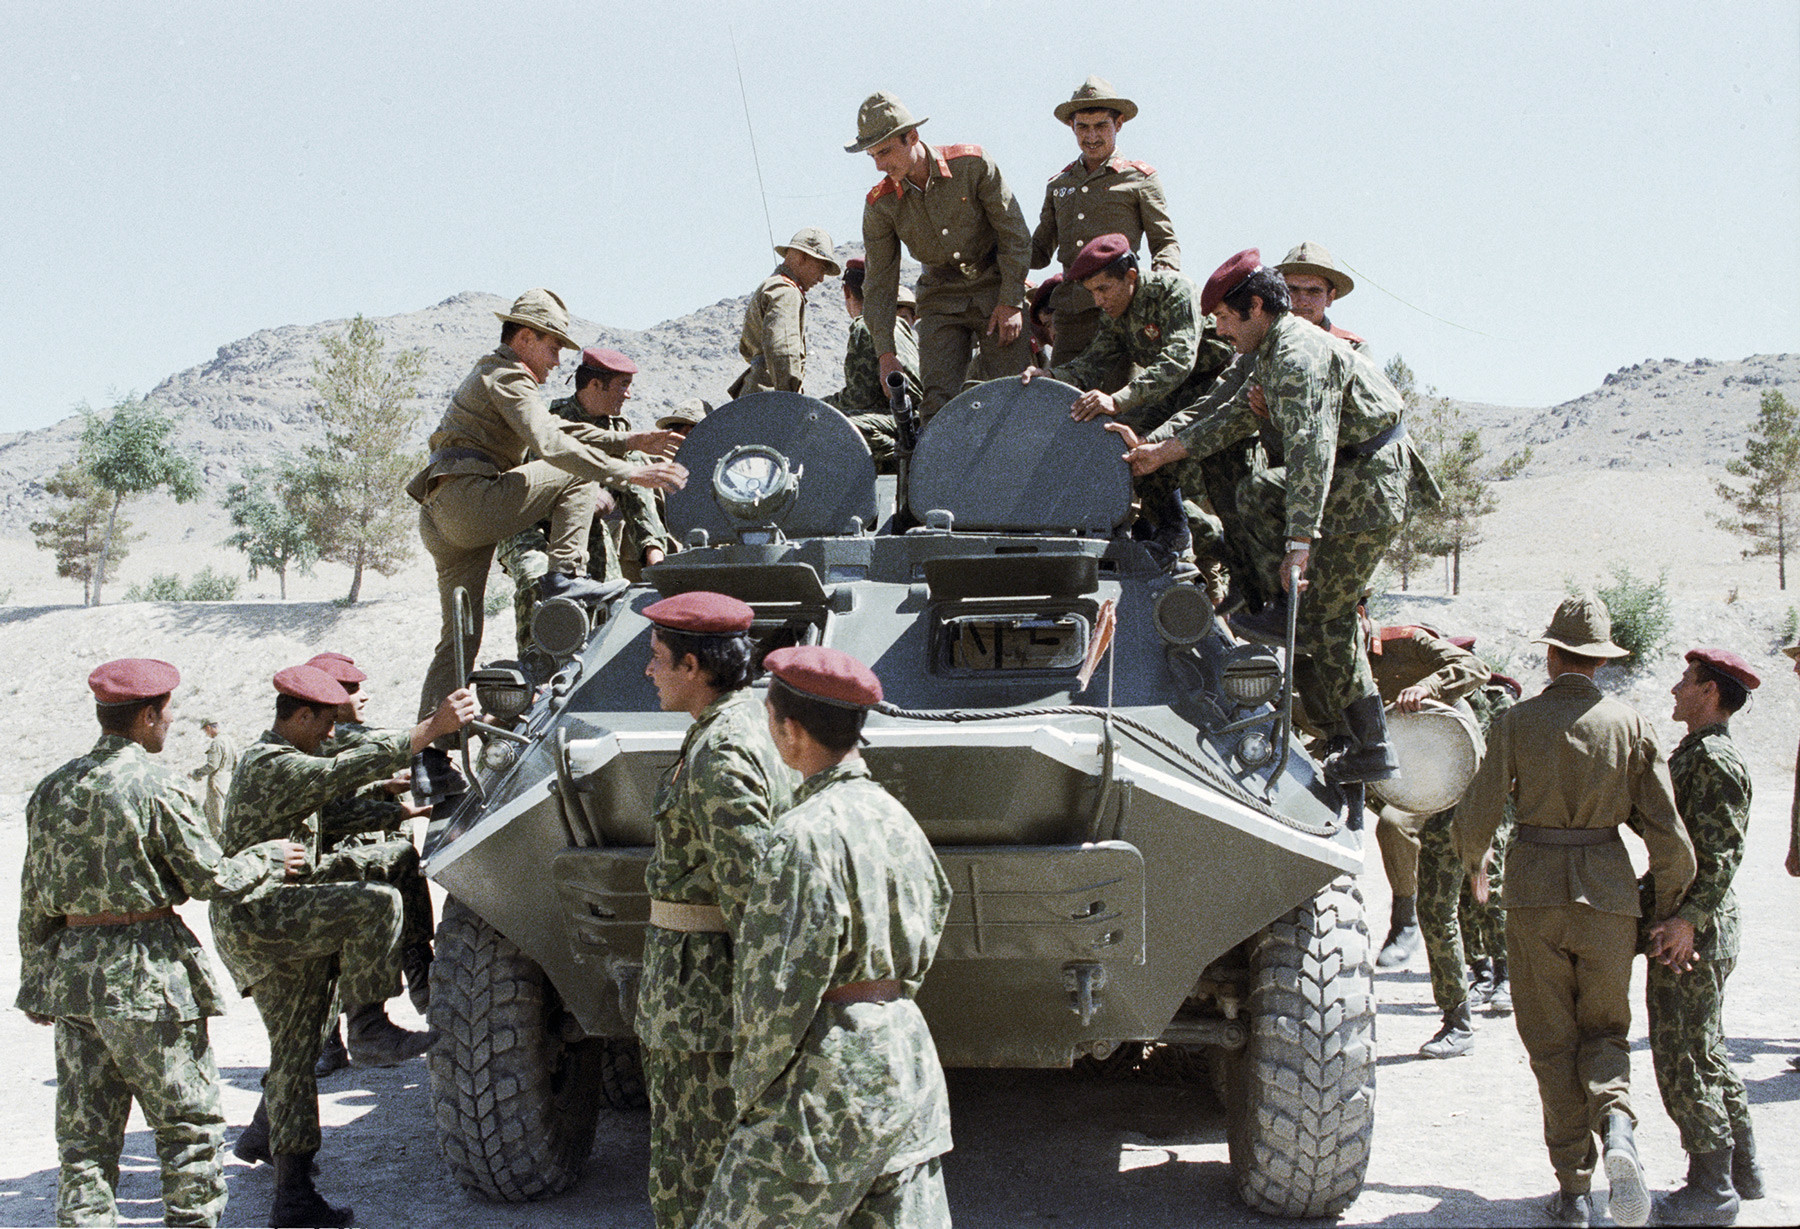 ソ連の兵士がアフガニスタンの落下傘兵に軍用装置を見せている。
